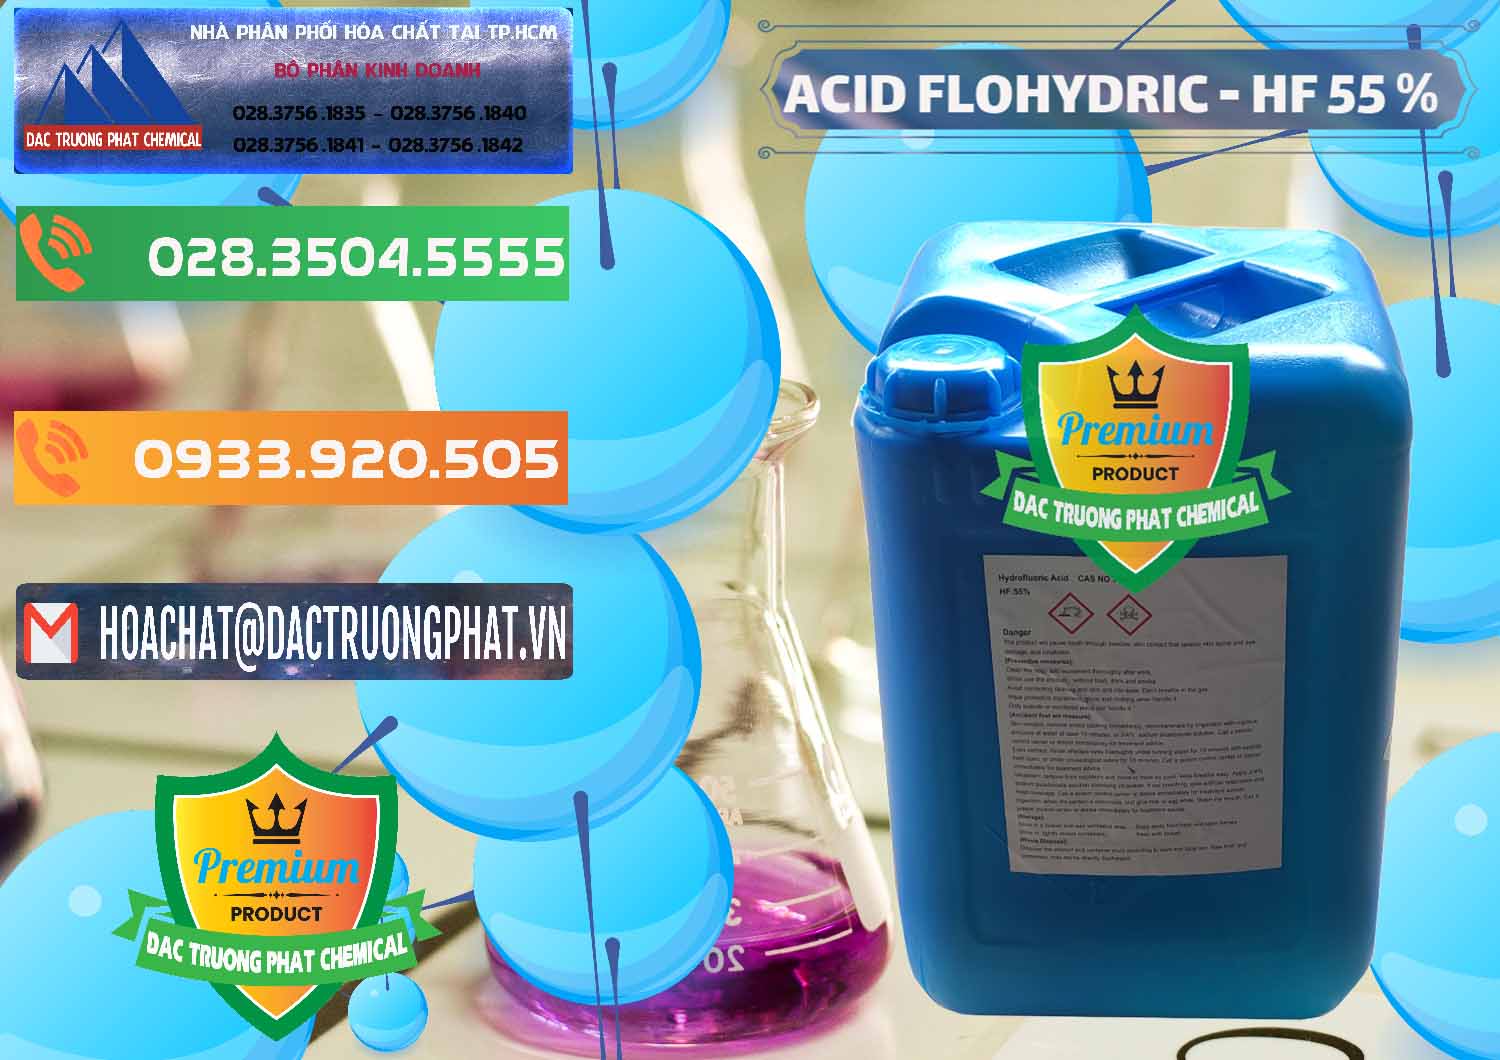 Công ty bán ( cung cấp ) Axit HF - Acid HF 55% Can Xanh Trung Quốc China - 0080 - Công ty chuyên bán _ phân phối hóa chất tại TP.HCM - hoachatxulynuoc.com.vn